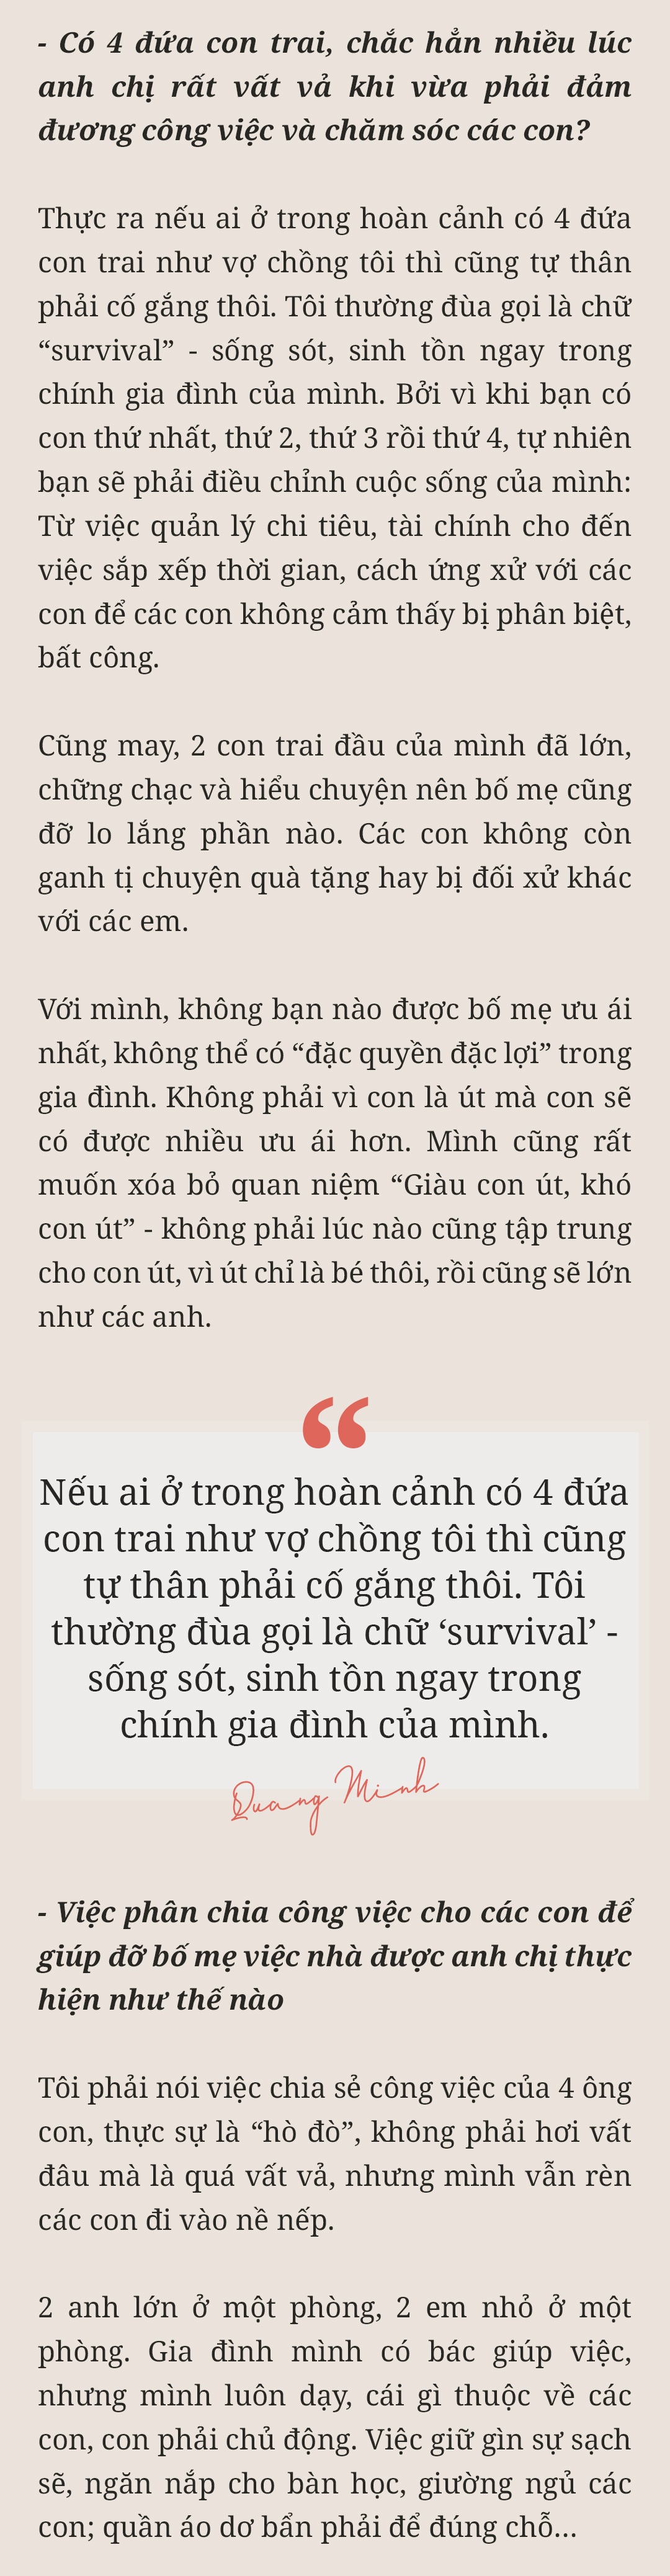 MC Trần Quang Minh: amp;#34;Nếu mừng tuổi ít, các con thấy buồn một thì mình tủi thân mườiamp;#34; - 26